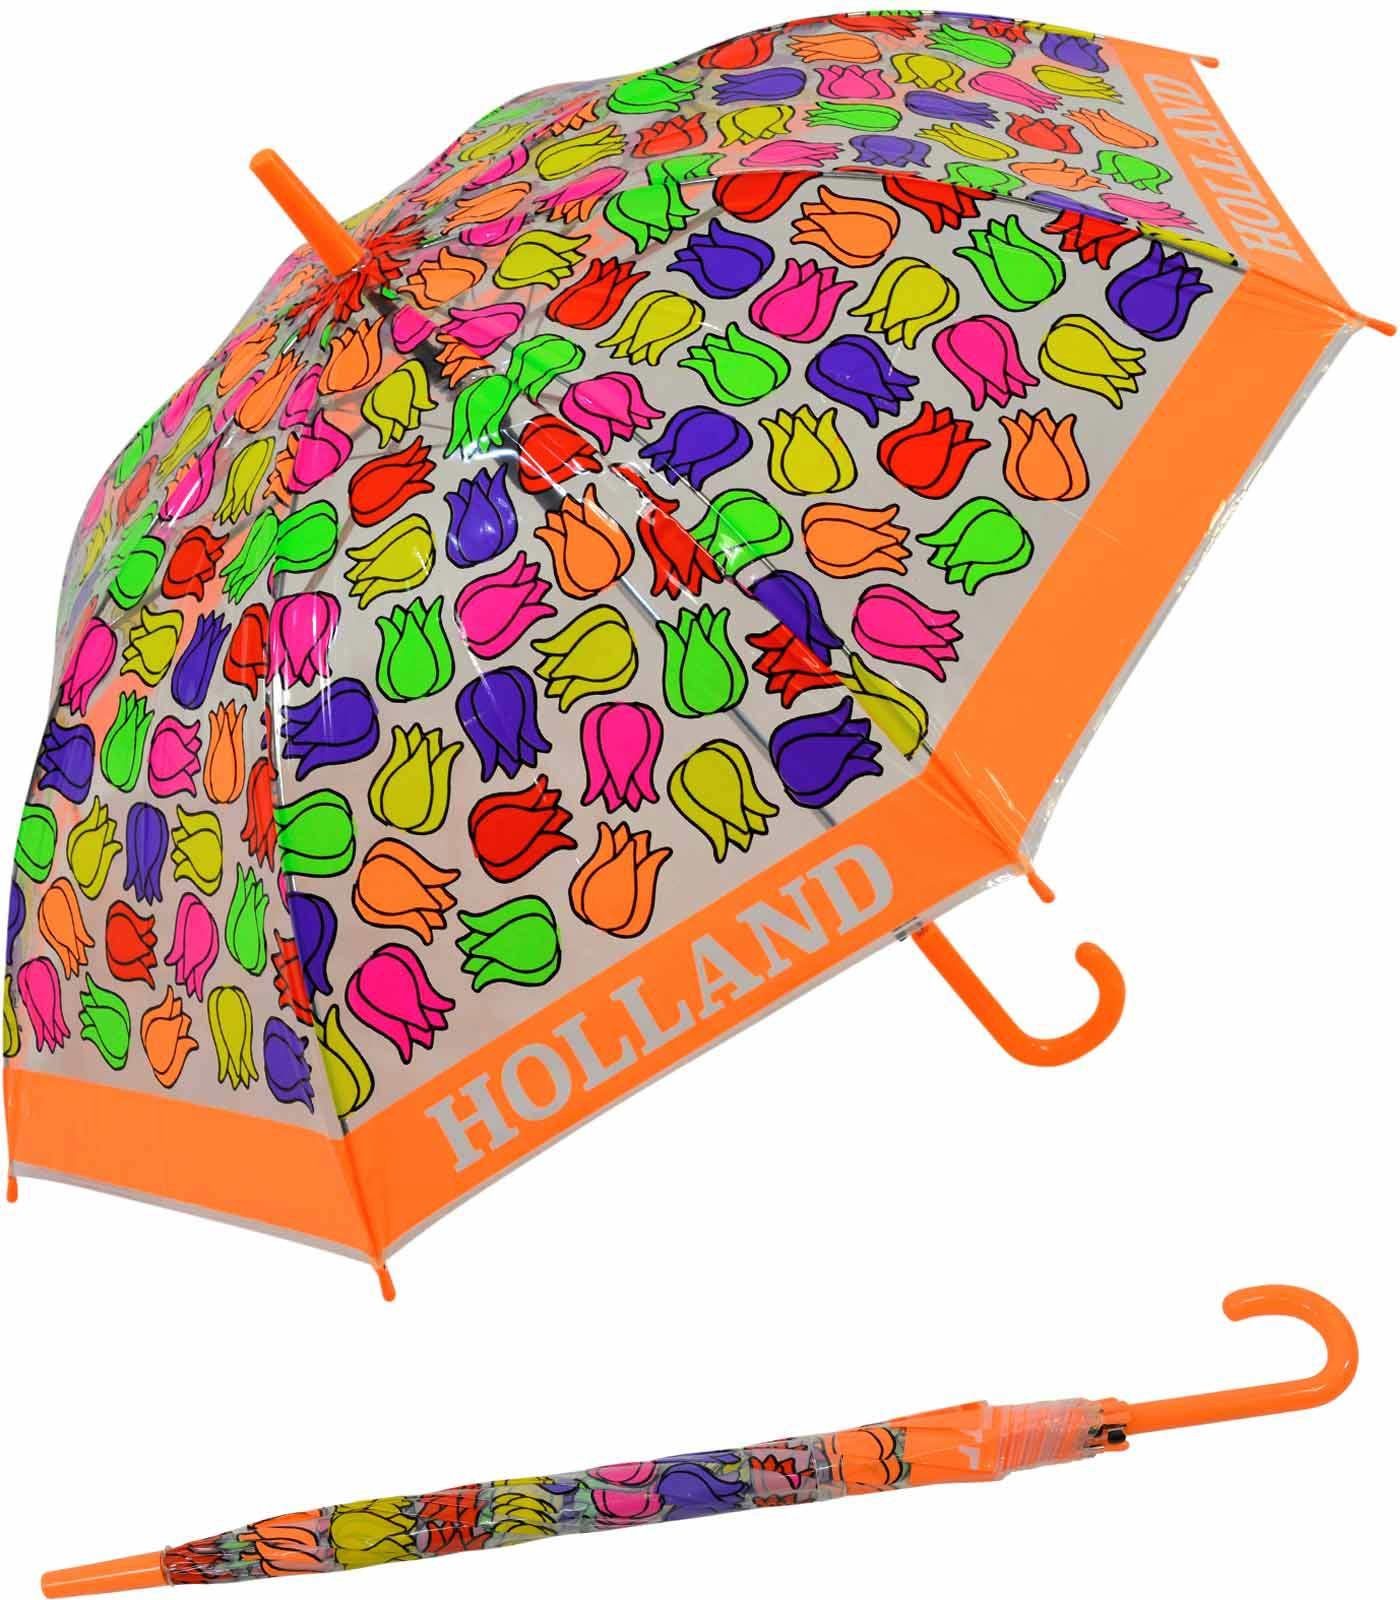 Langregenschirm durchsichtig Tulpen, bunt transparent - Kinderschirm Impliva orange Falconetti